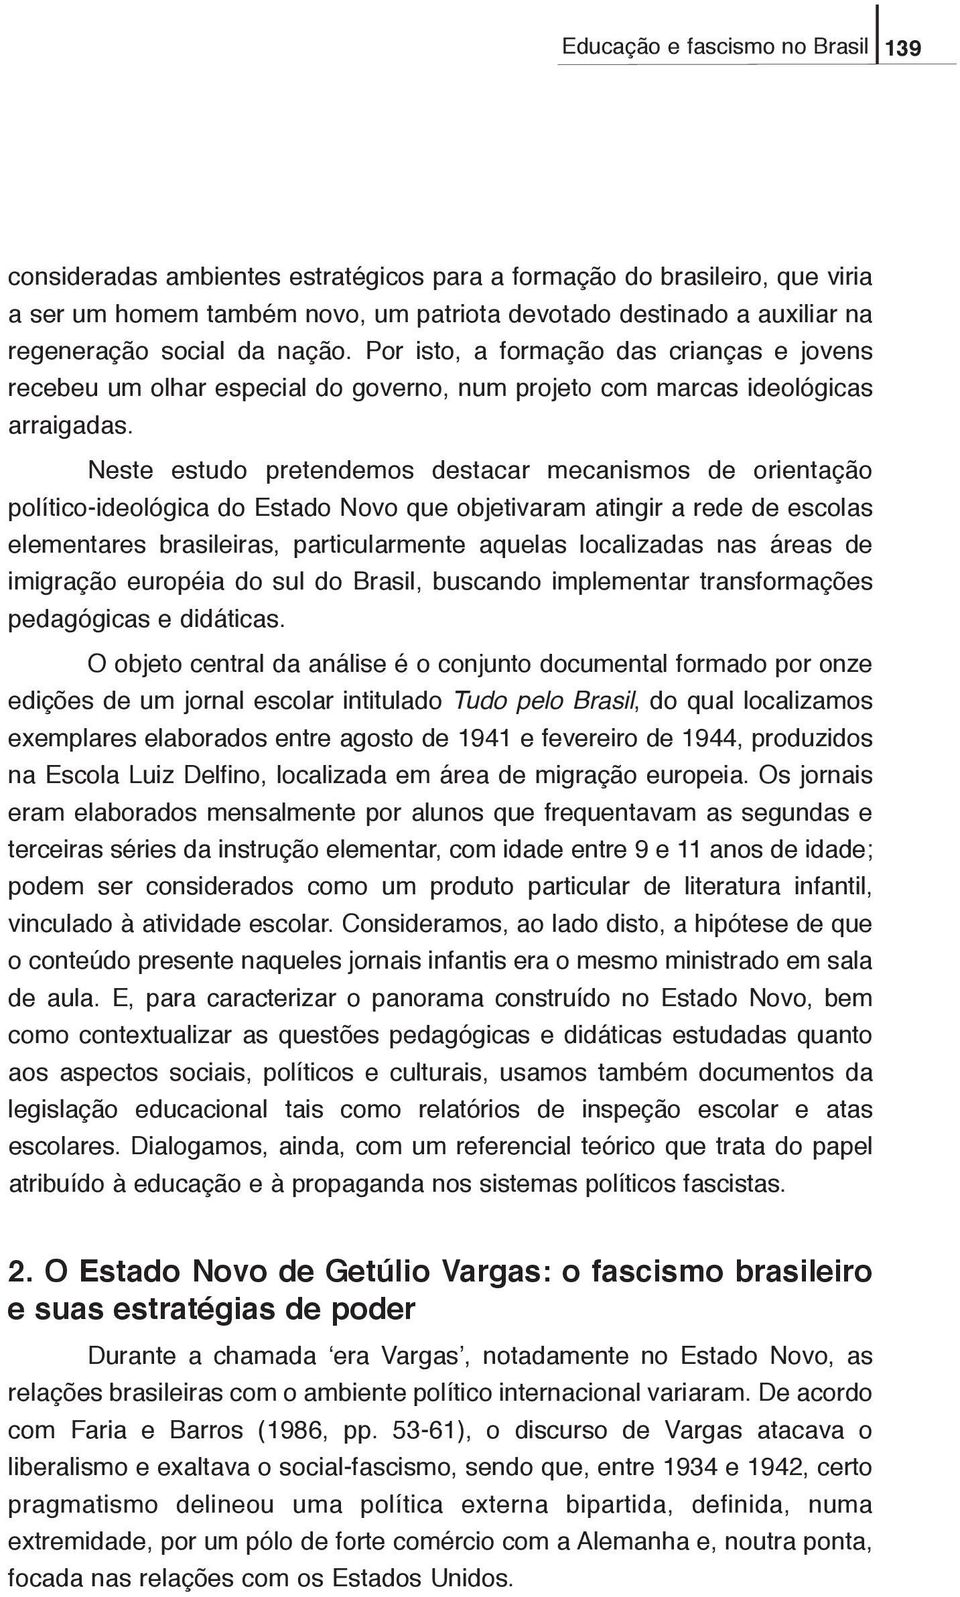 Neste estudo pretendemos destacar mecanismos de orientação político-ideológica do Estado Novo que objetivaram atingir a rede de escolas elementares brasileiras, particularmente aquelas localizadas